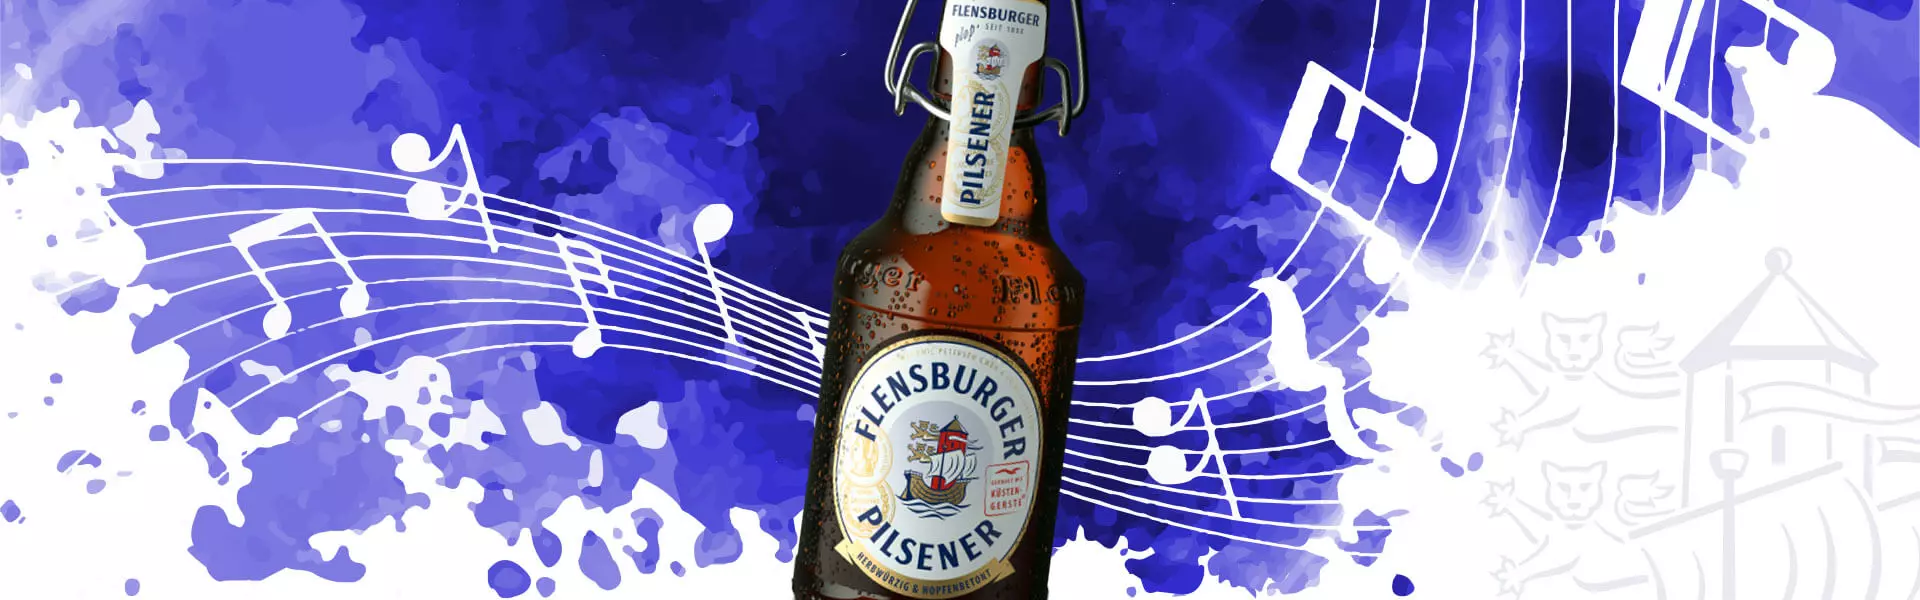 Violetter Hintergrund mit fliegenden Musiknoten, im Vordergrund eine große Flasche Flensburger Pilsener.